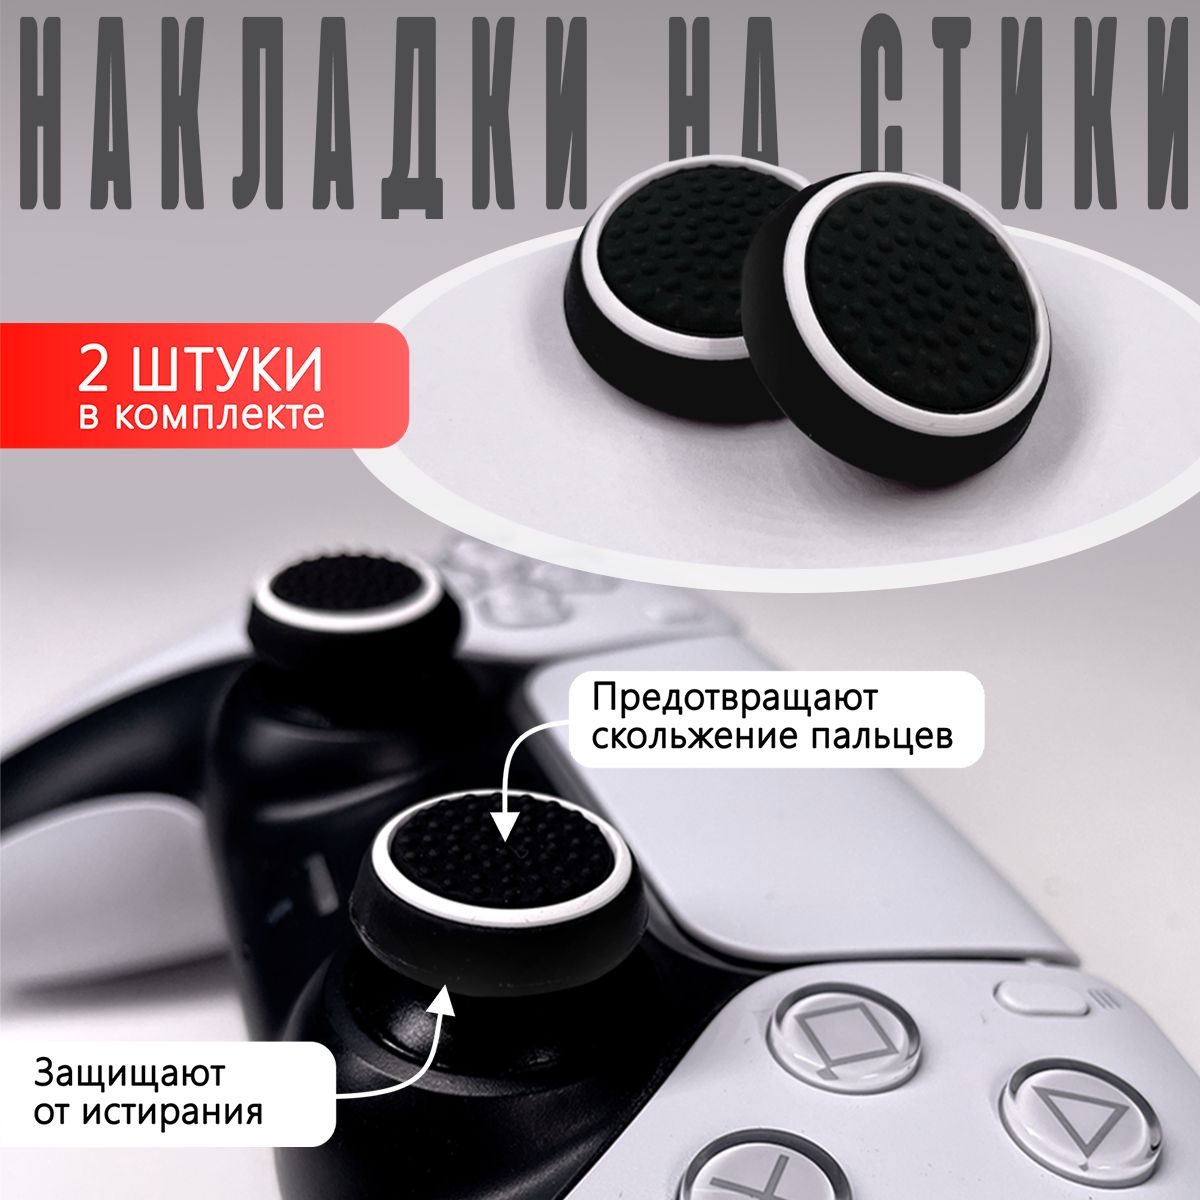 Накладка на стик для геймпада NoBrand White для Playstation 4 – купить в Москве, цены в интернет-магазинах на Мегамаркет